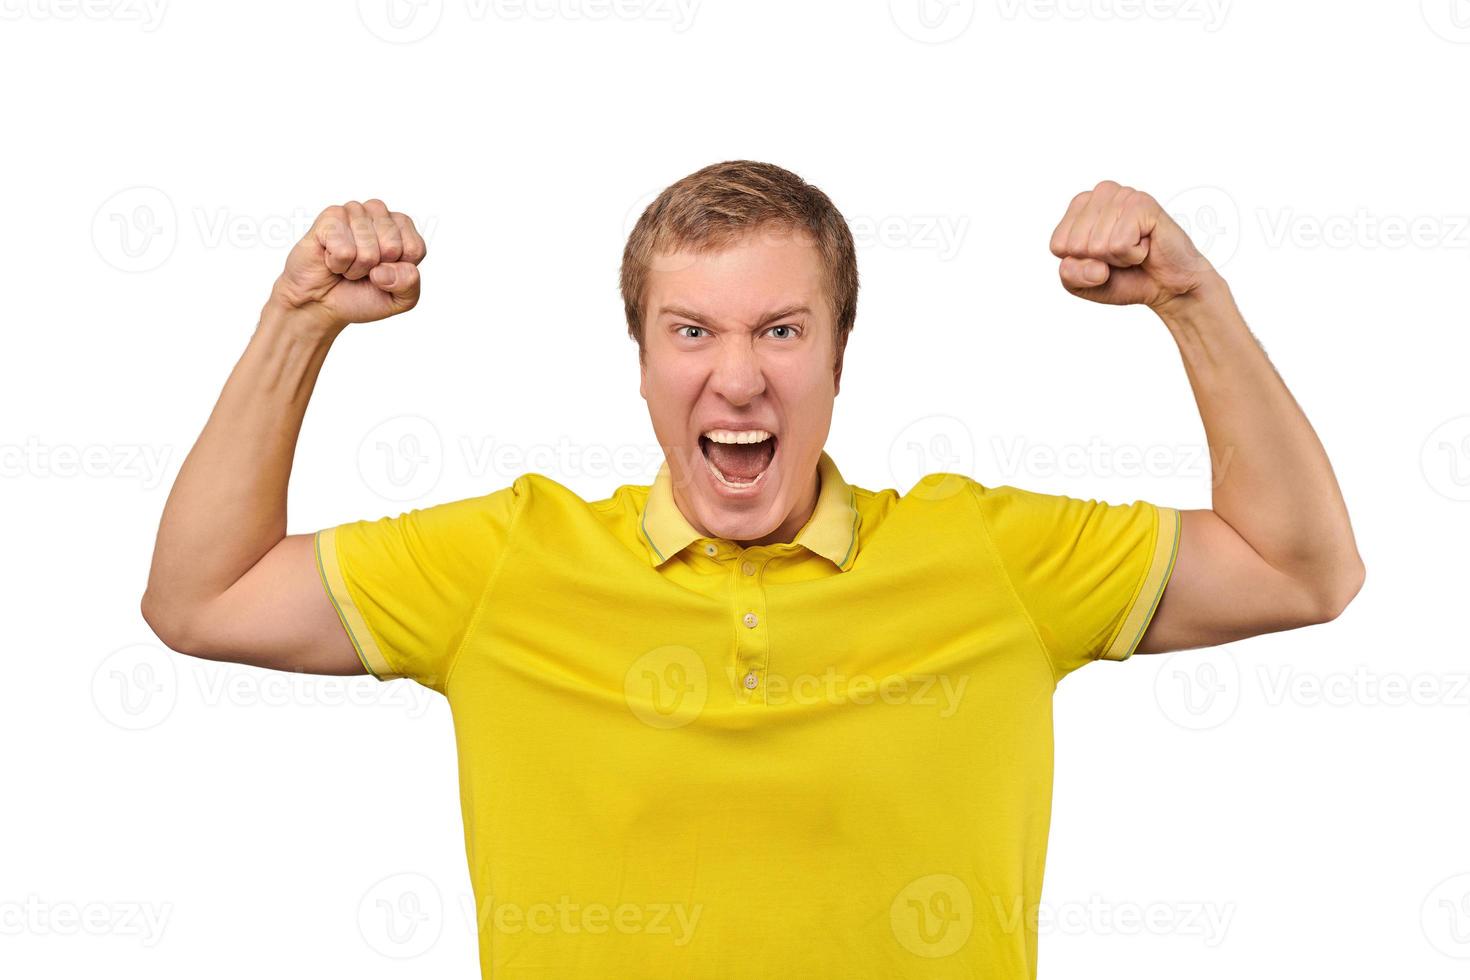 grappige jonge man in casual geel t-shirt die handen opsteekt en zich verheugt over succes, geïsoleerde achtergrond foto